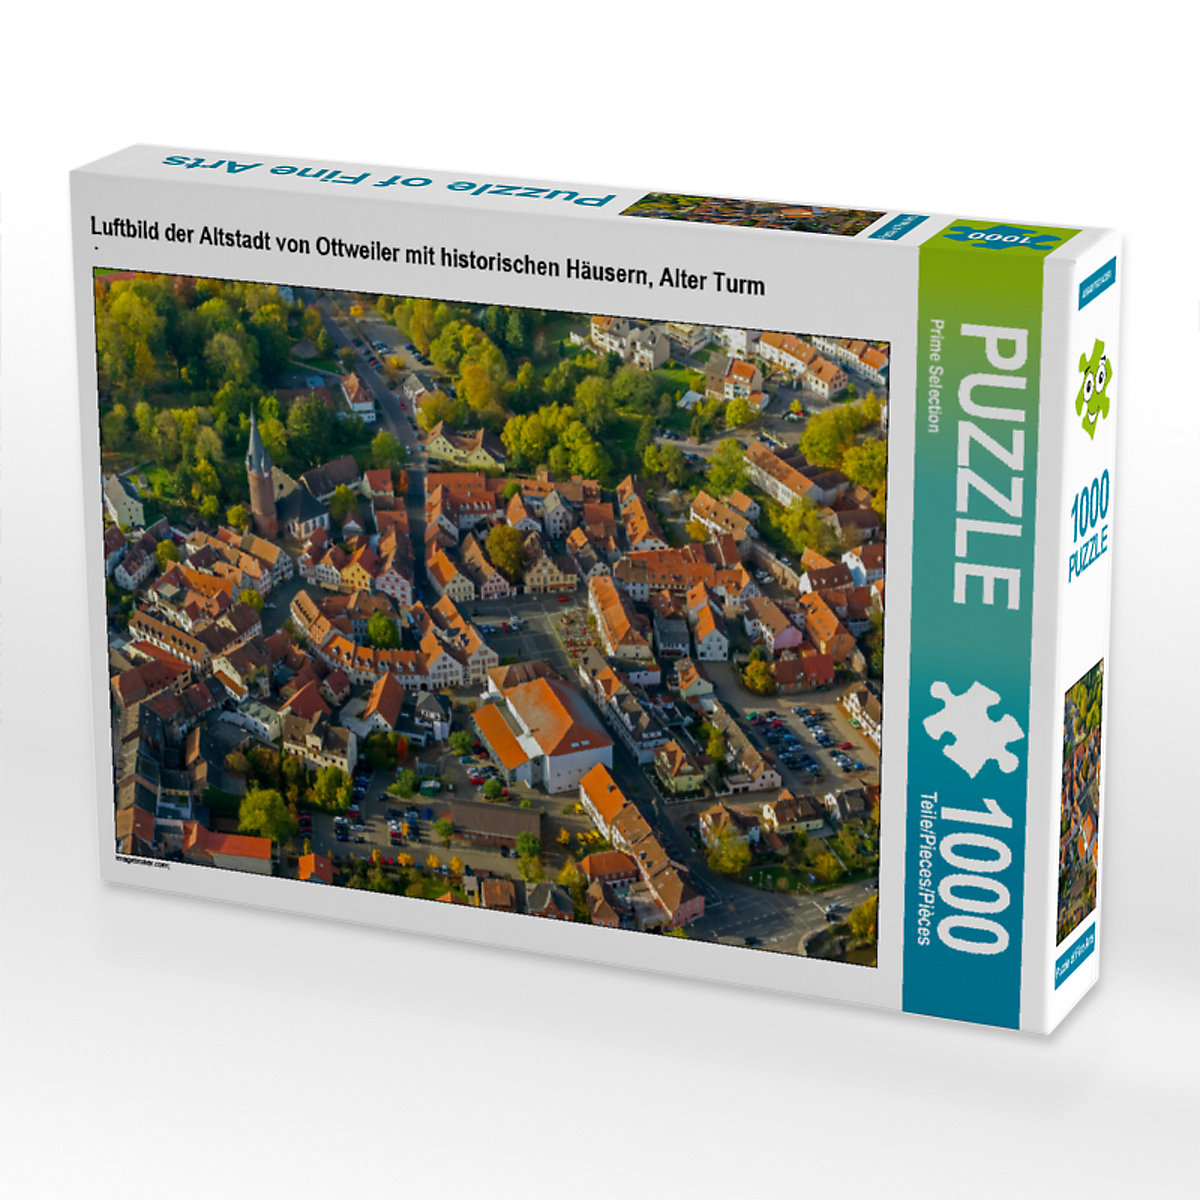 CALVENDO® Puzzle CALVENDO Puzzle Luftbild der Altstadt von Ottweiler mit historischen Häusern Alter Turm 1000 Teile Foto-Puzzle für glückliche Stunden